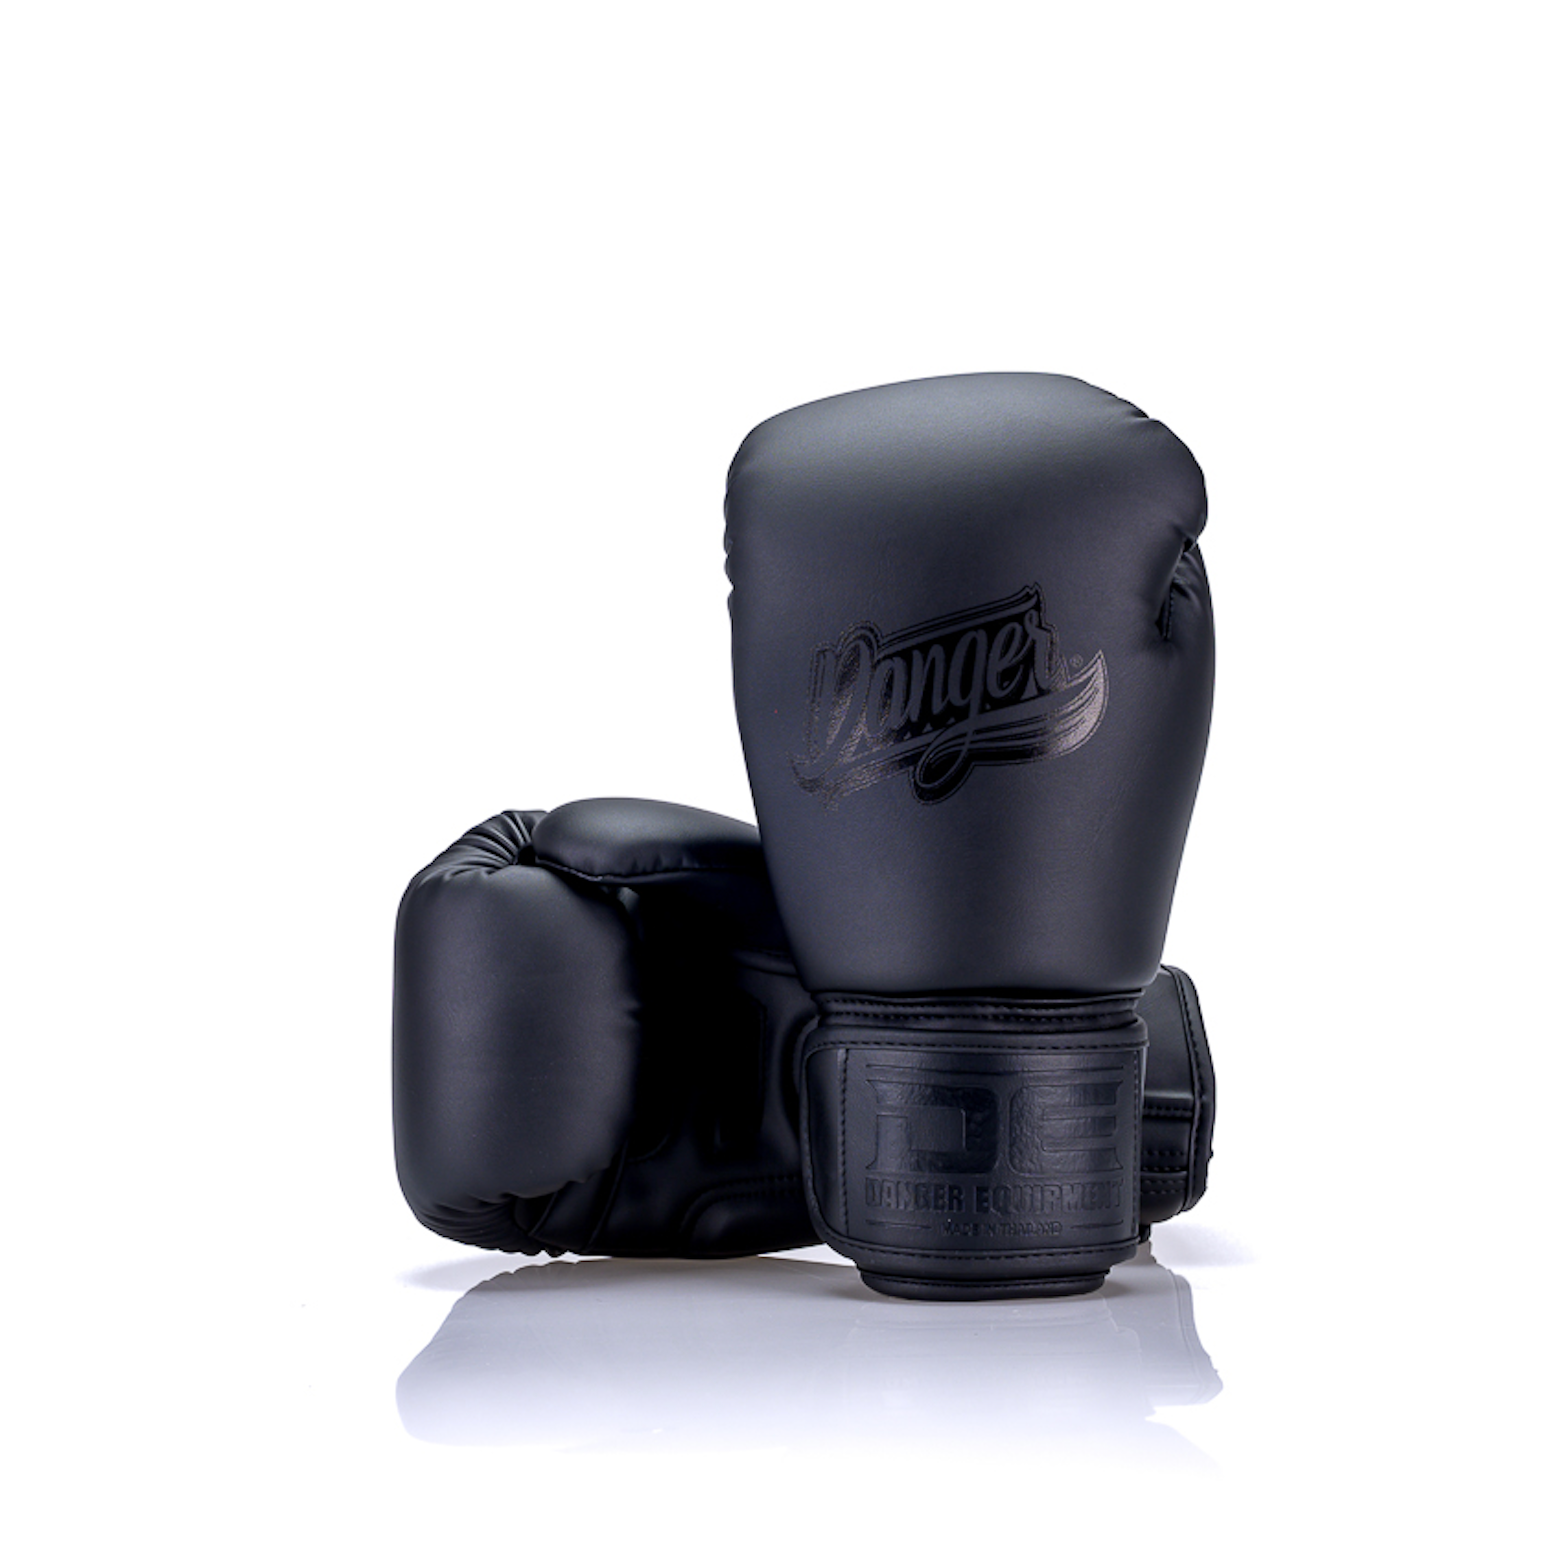 Black Danger Equipment Super Max Boxing Gloves Front/Back